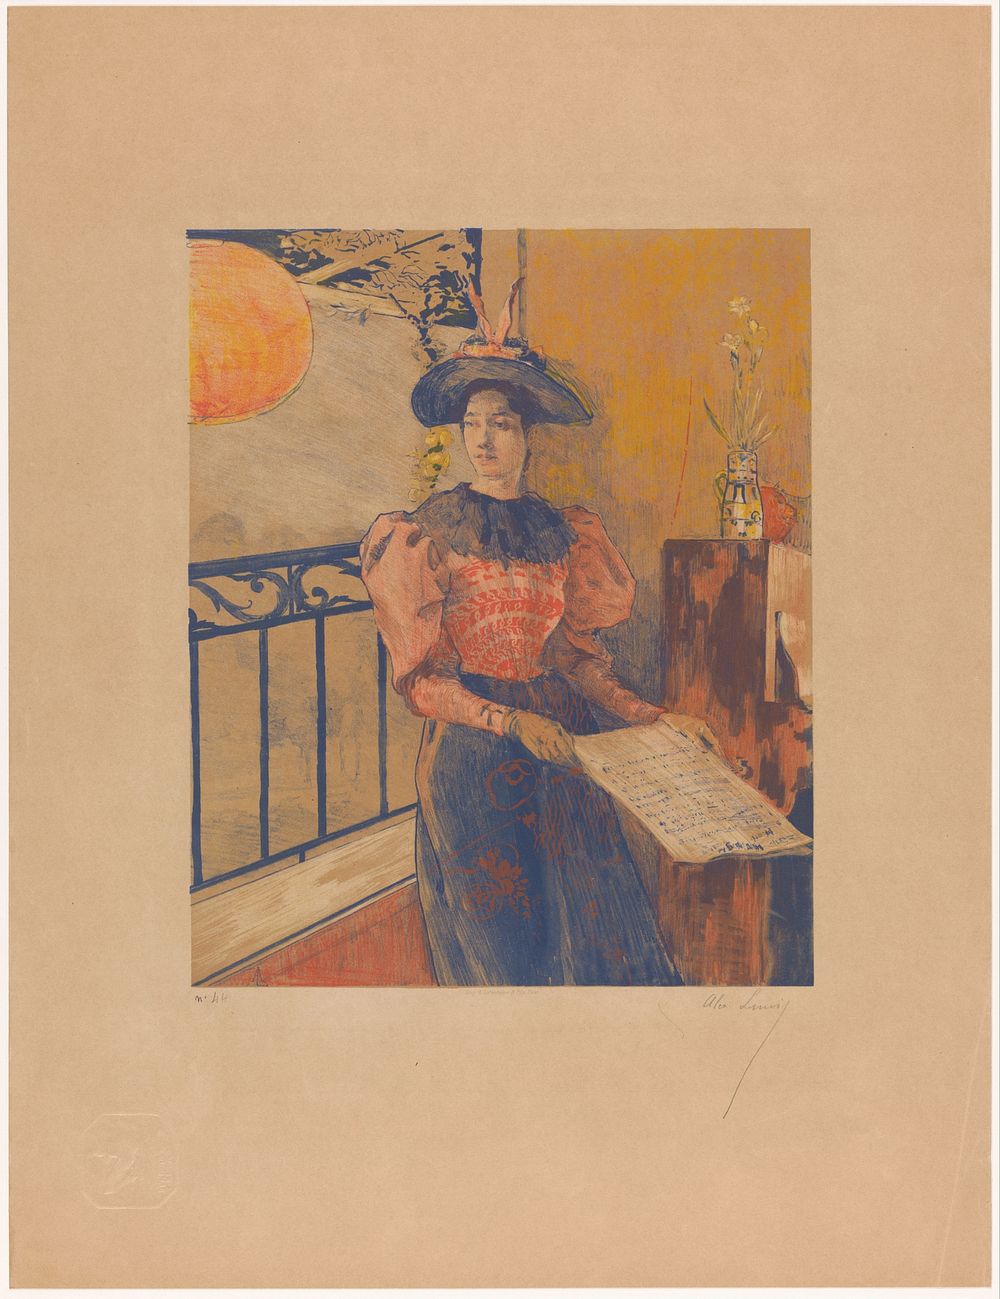 Staande vrouw met bladmuziek in haar handen (1893) by Alexandre Lunois, A Lafontaine and Fils and André Marty